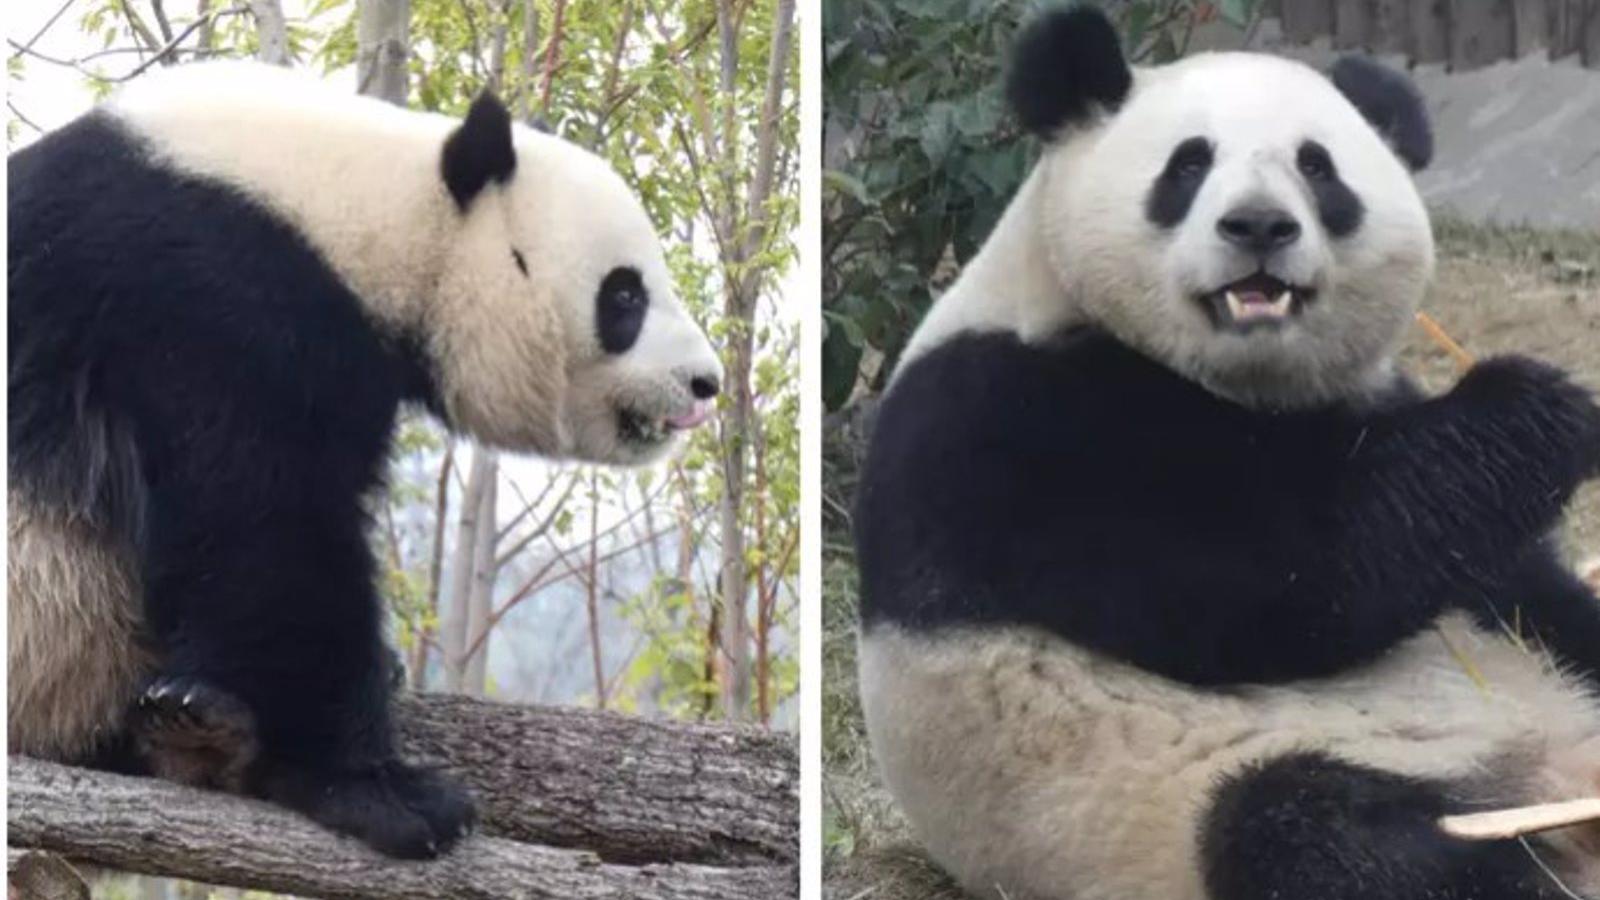 El Zoo Aquarium de Madrid recibe hoy a una nueva pareja de pandas, los hermanos Jin Xi y Zhu Yu